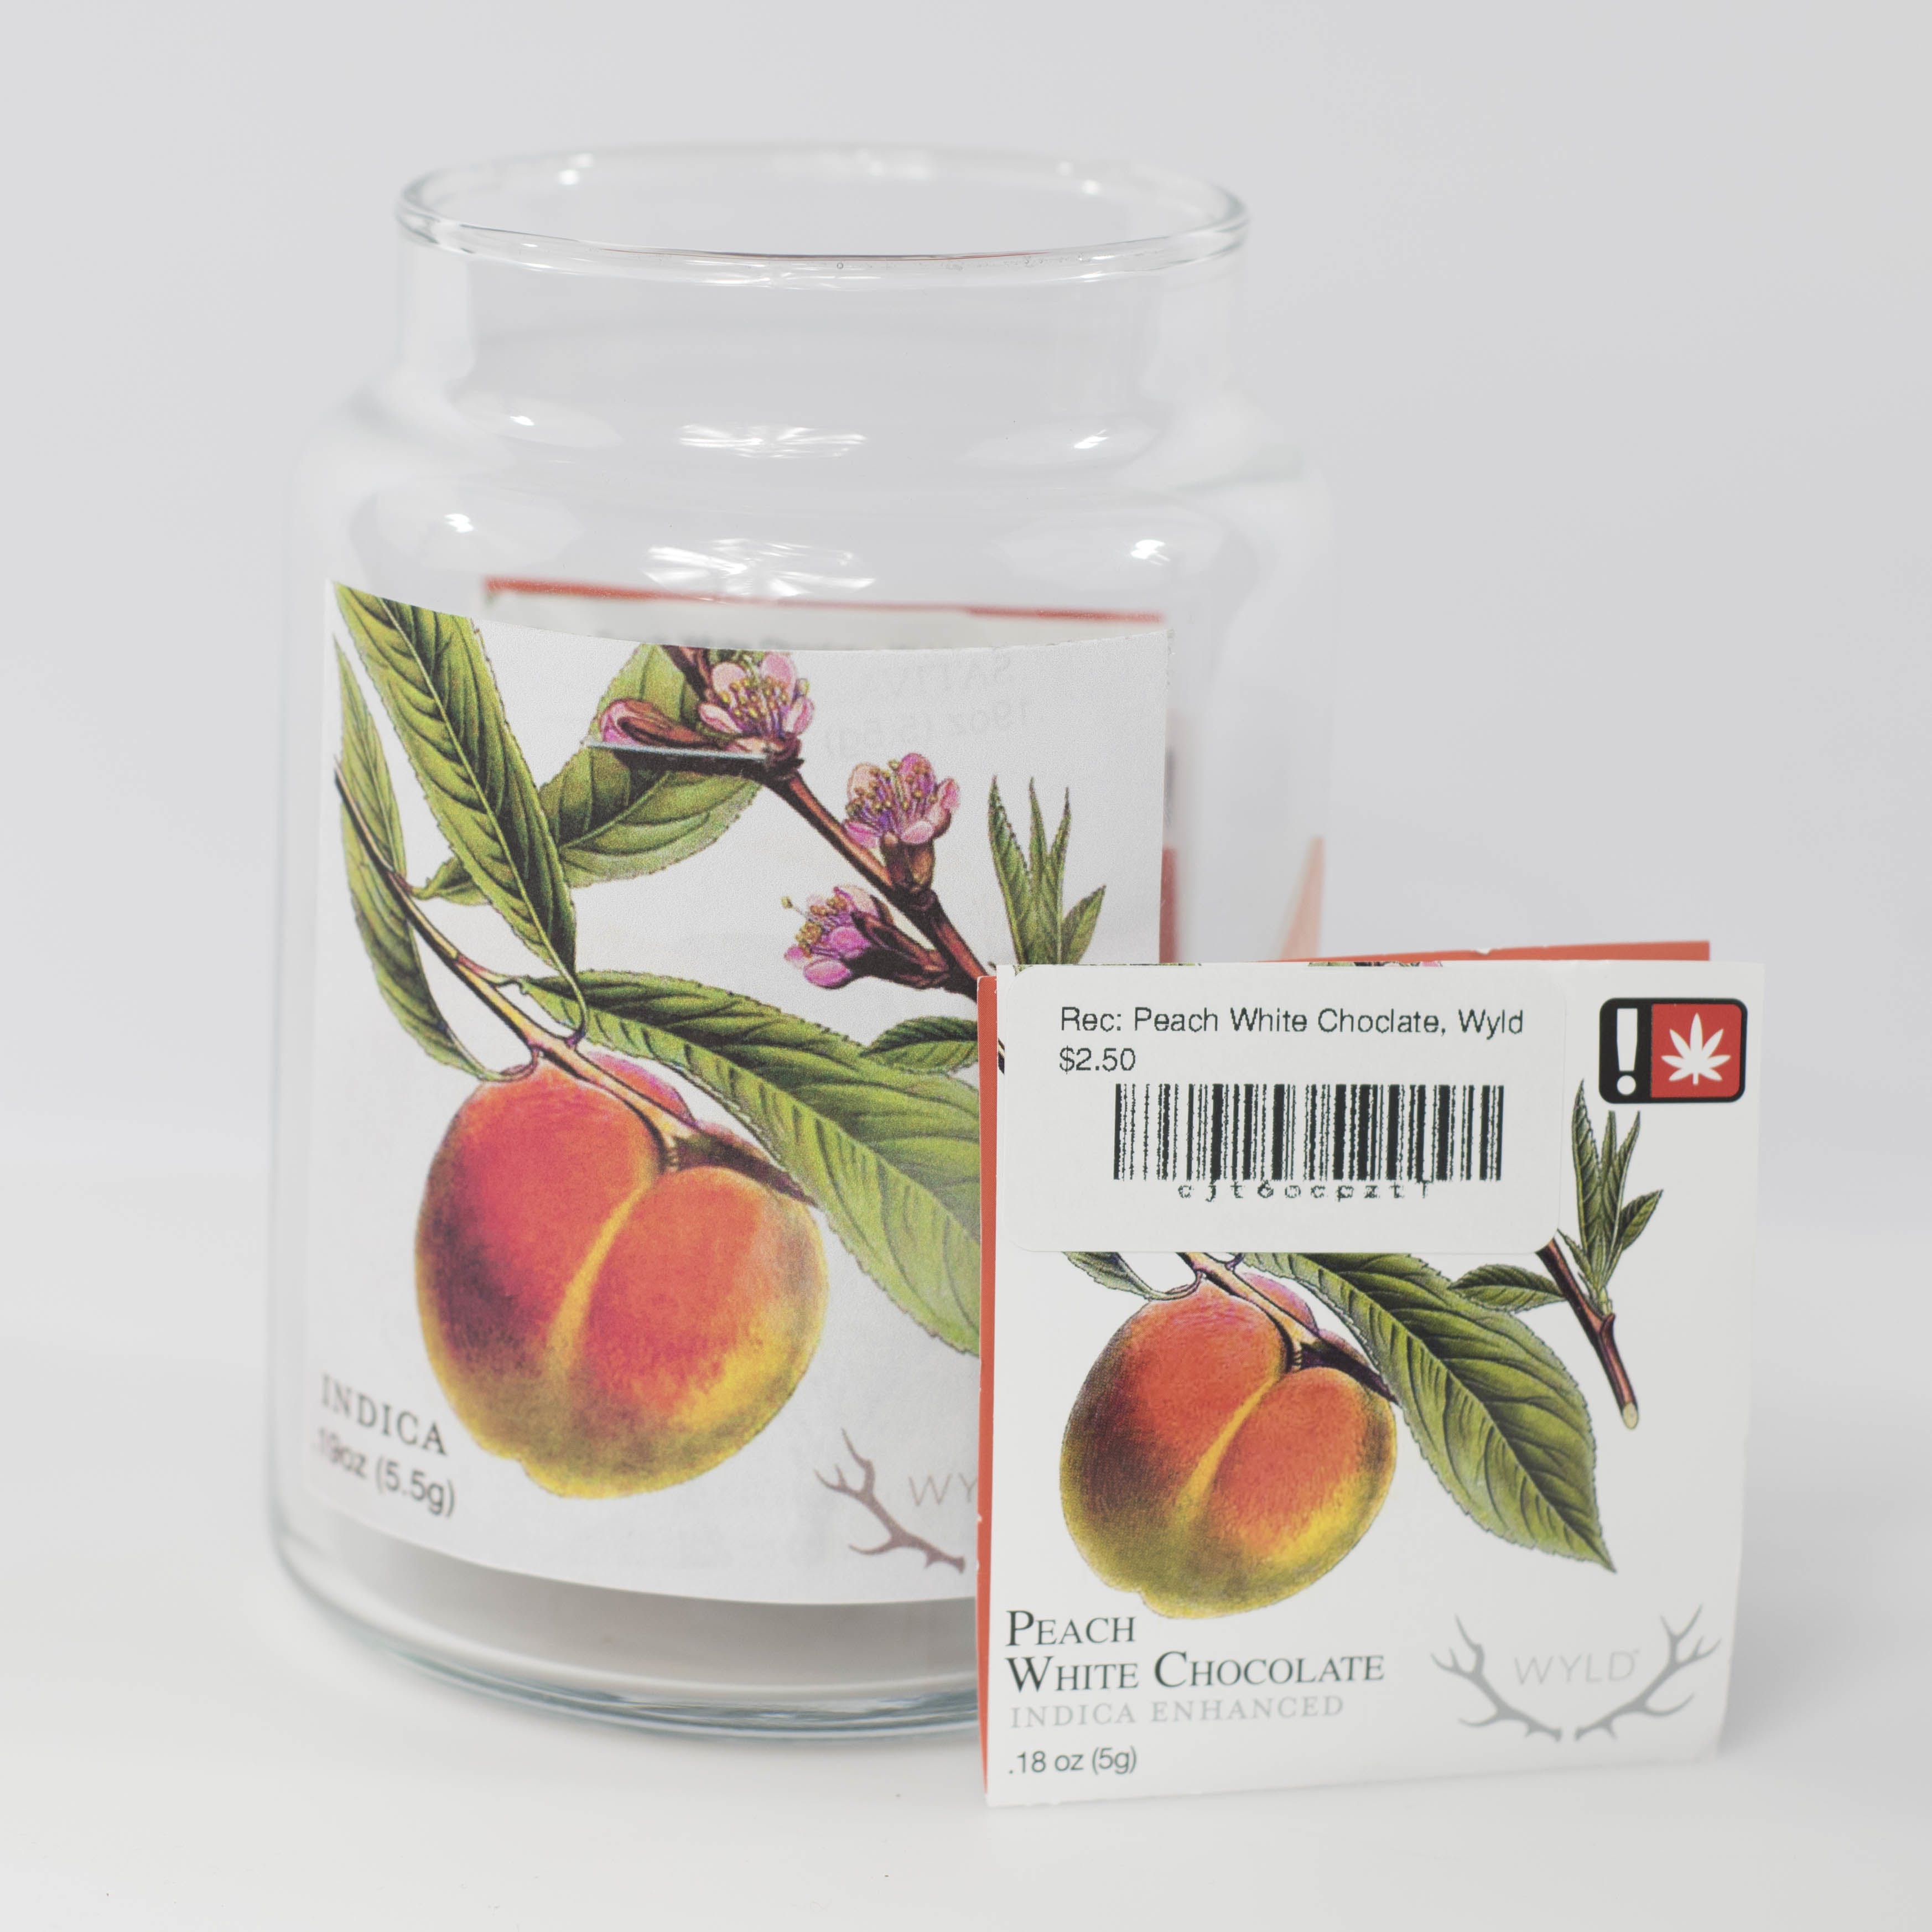 Peach White Choclate- Single